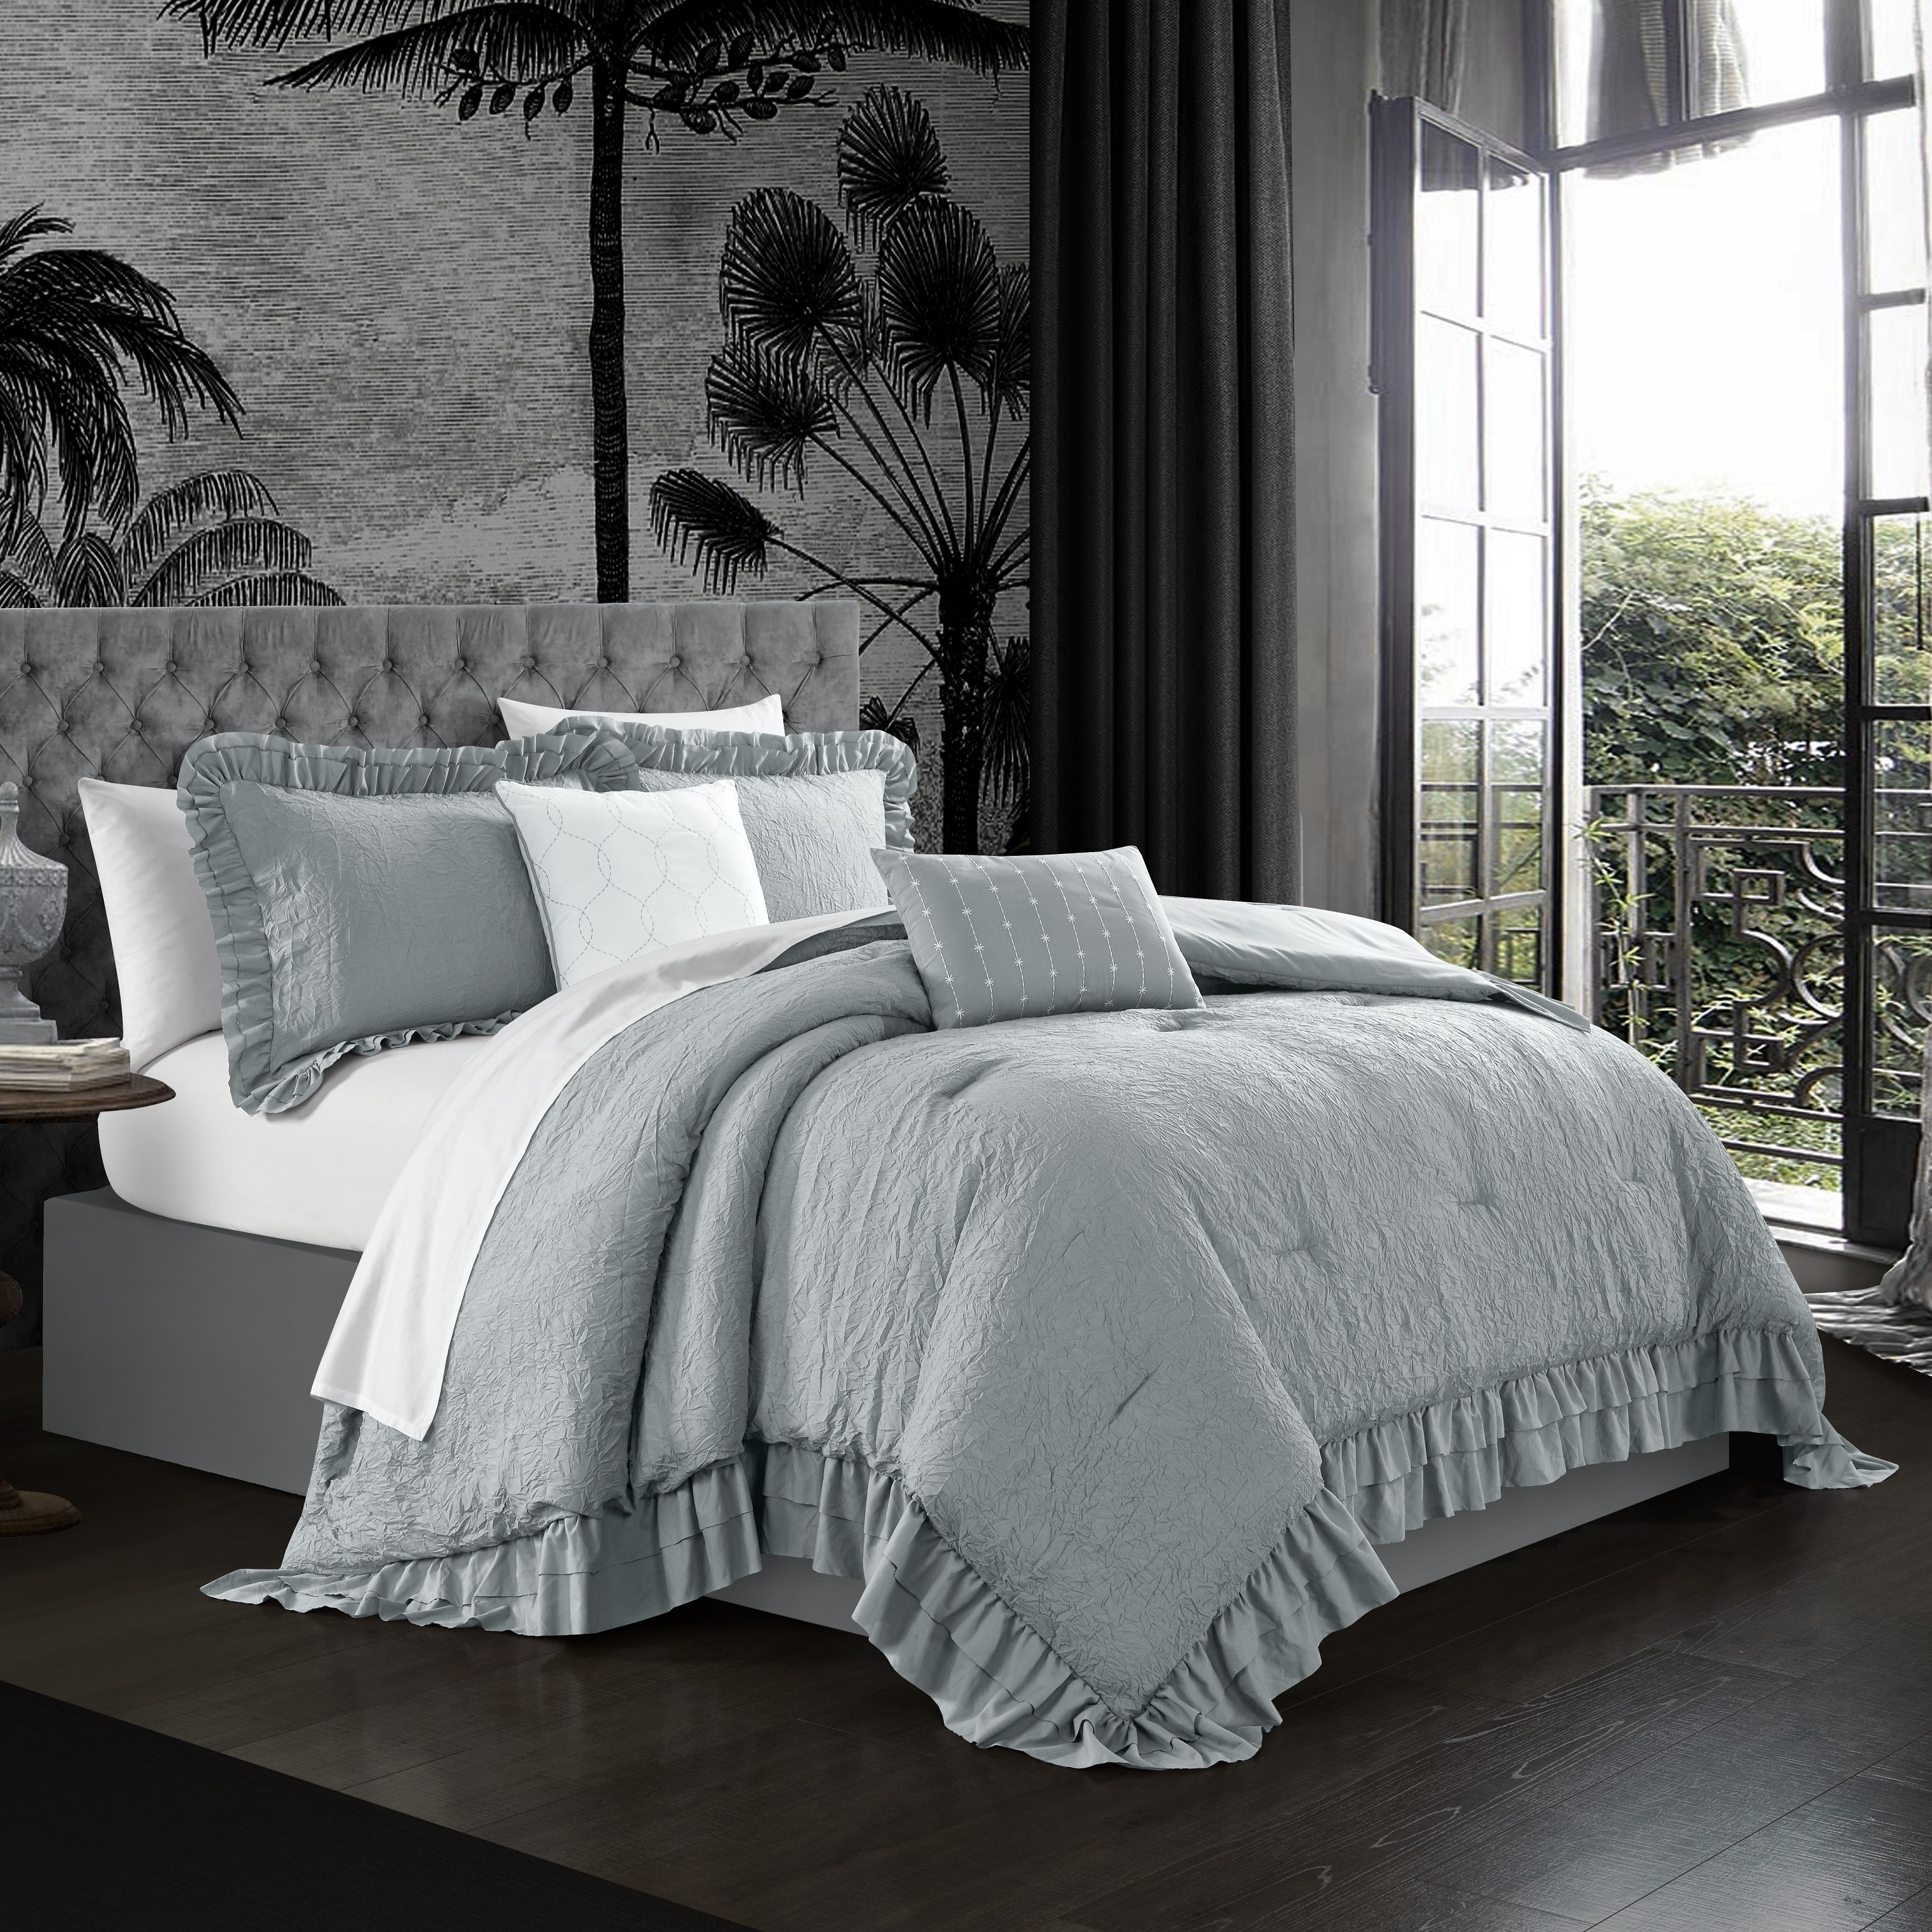 5 Piece Kensley Comforter Set Washed Crinkle Ruffled Flange Border Design Bedding - Blush, King